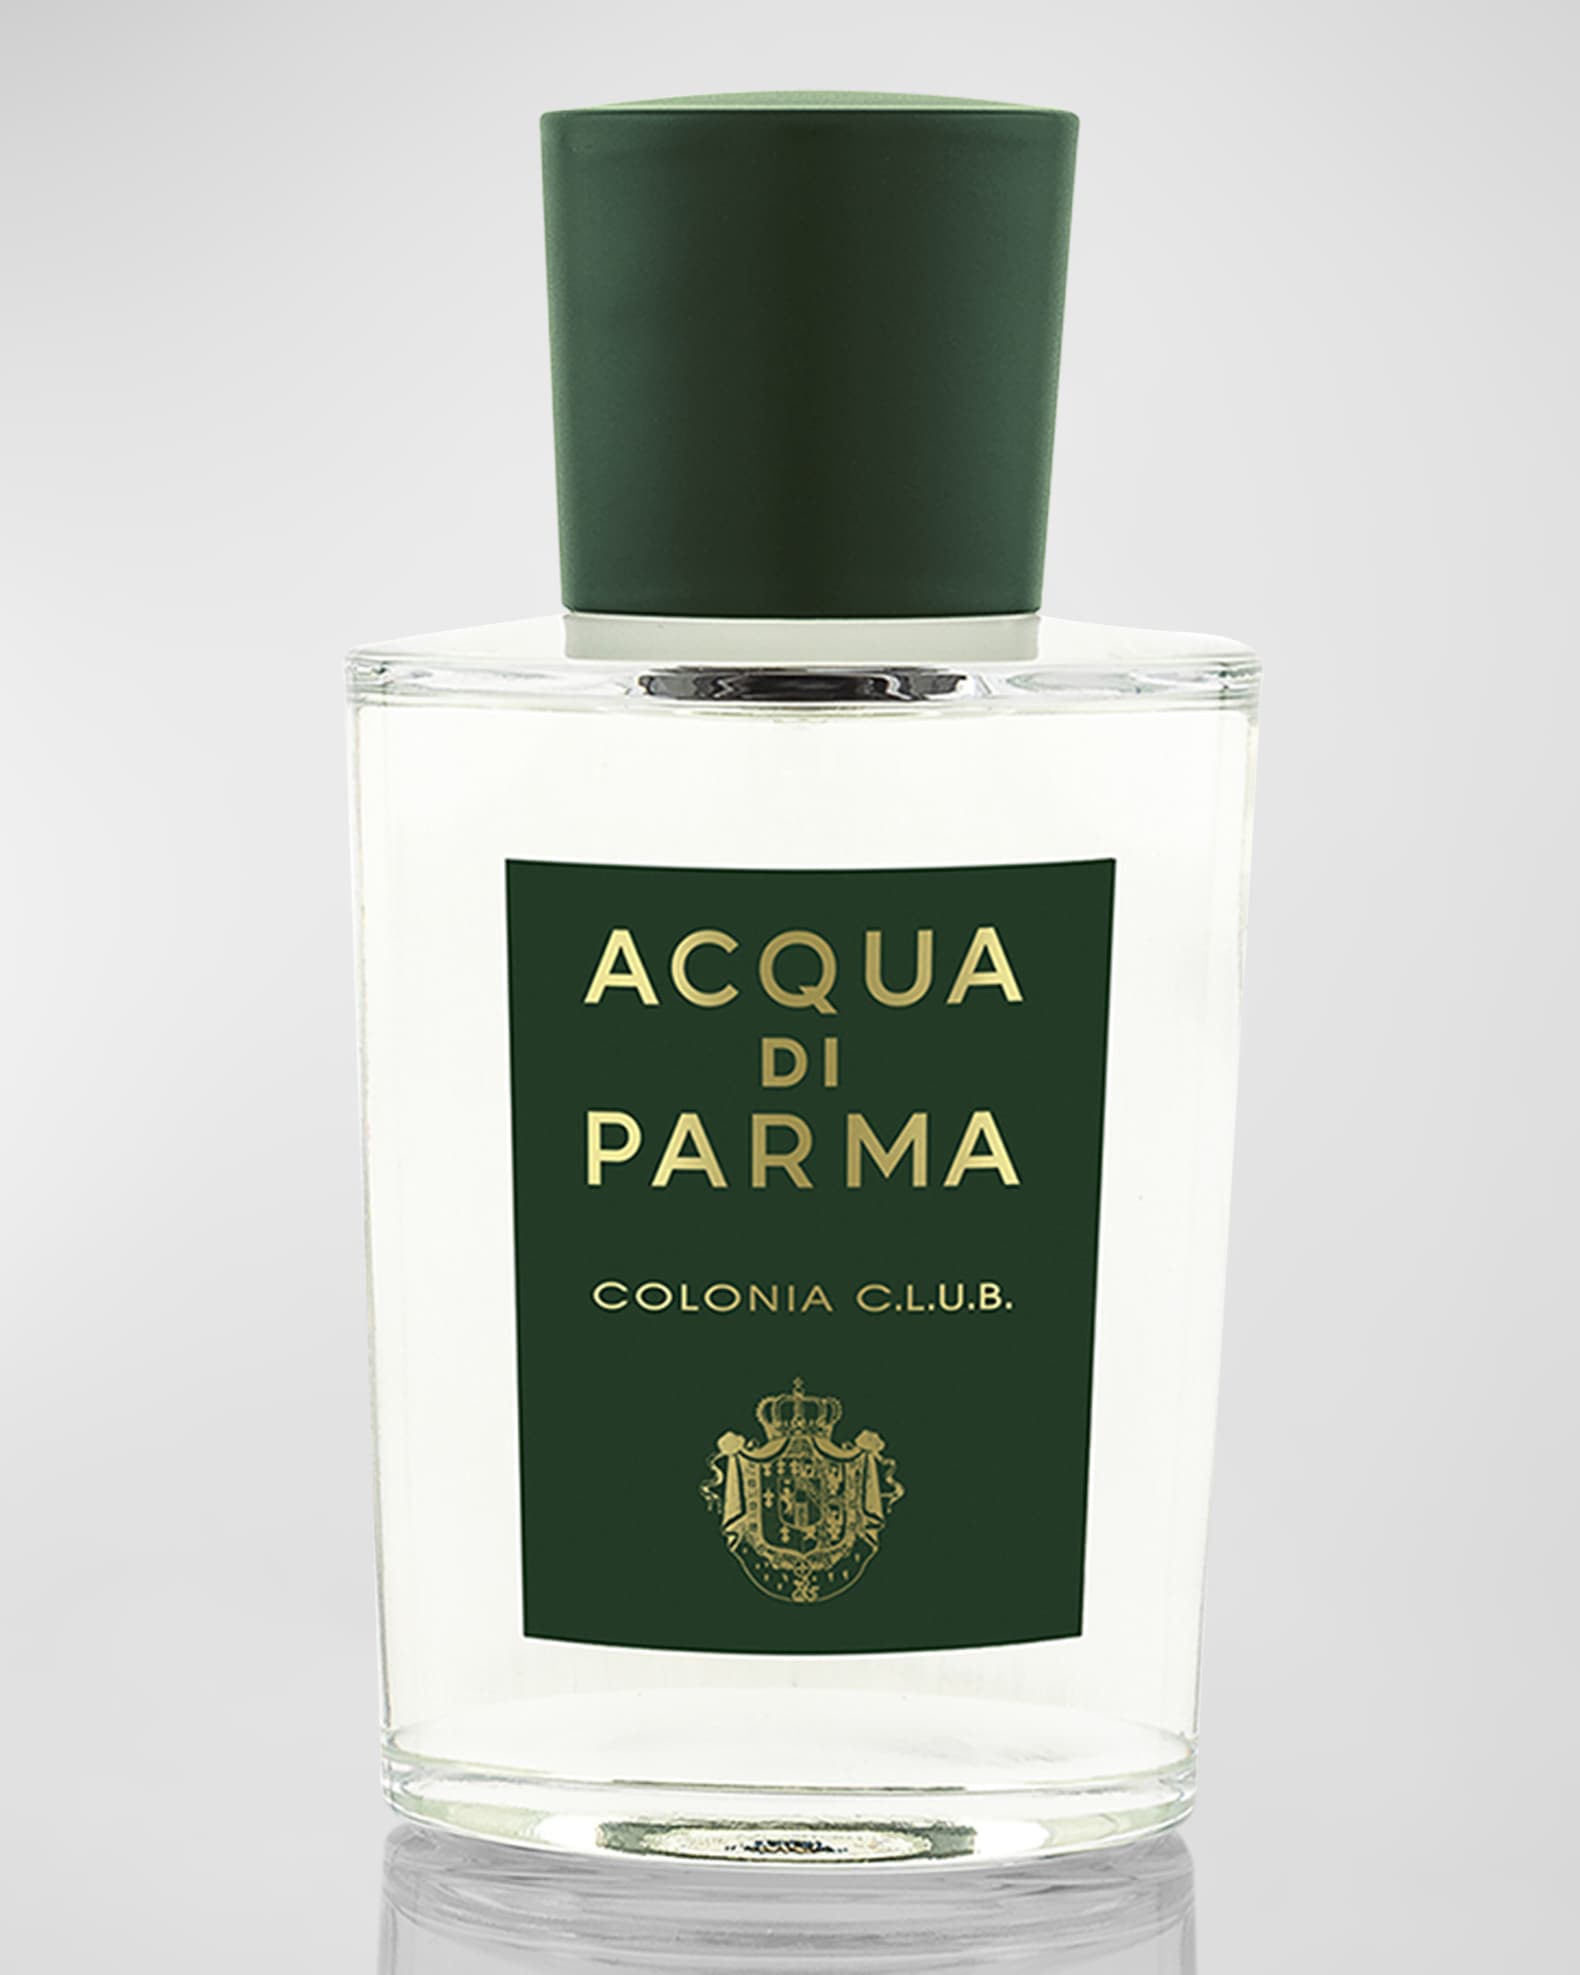 Acqua di Parma C.L.U.B: An Ode To the Beauty of Life